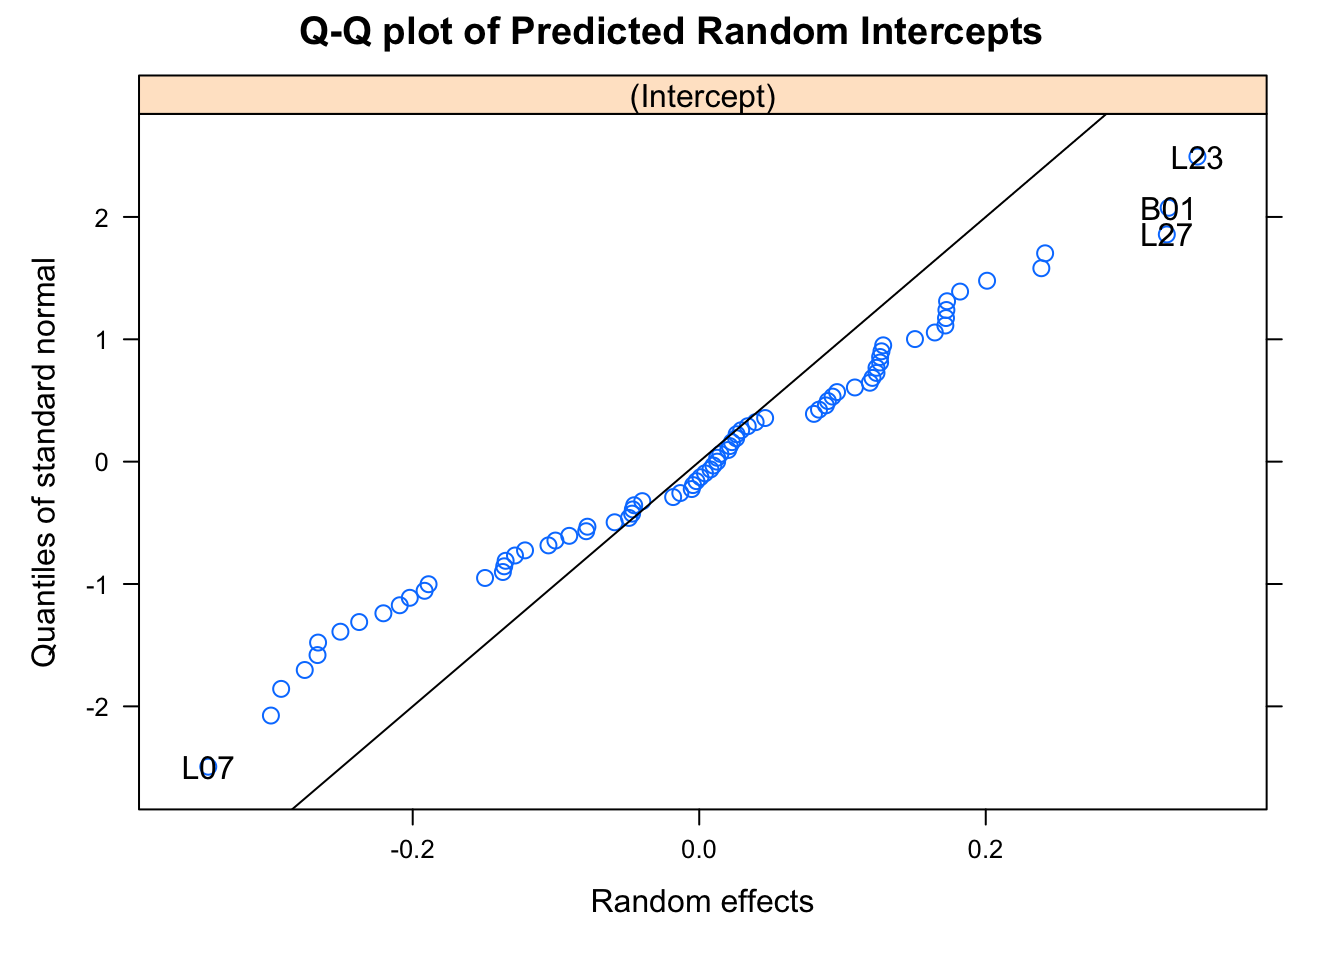 Plot for assessing normality of random intercept term.